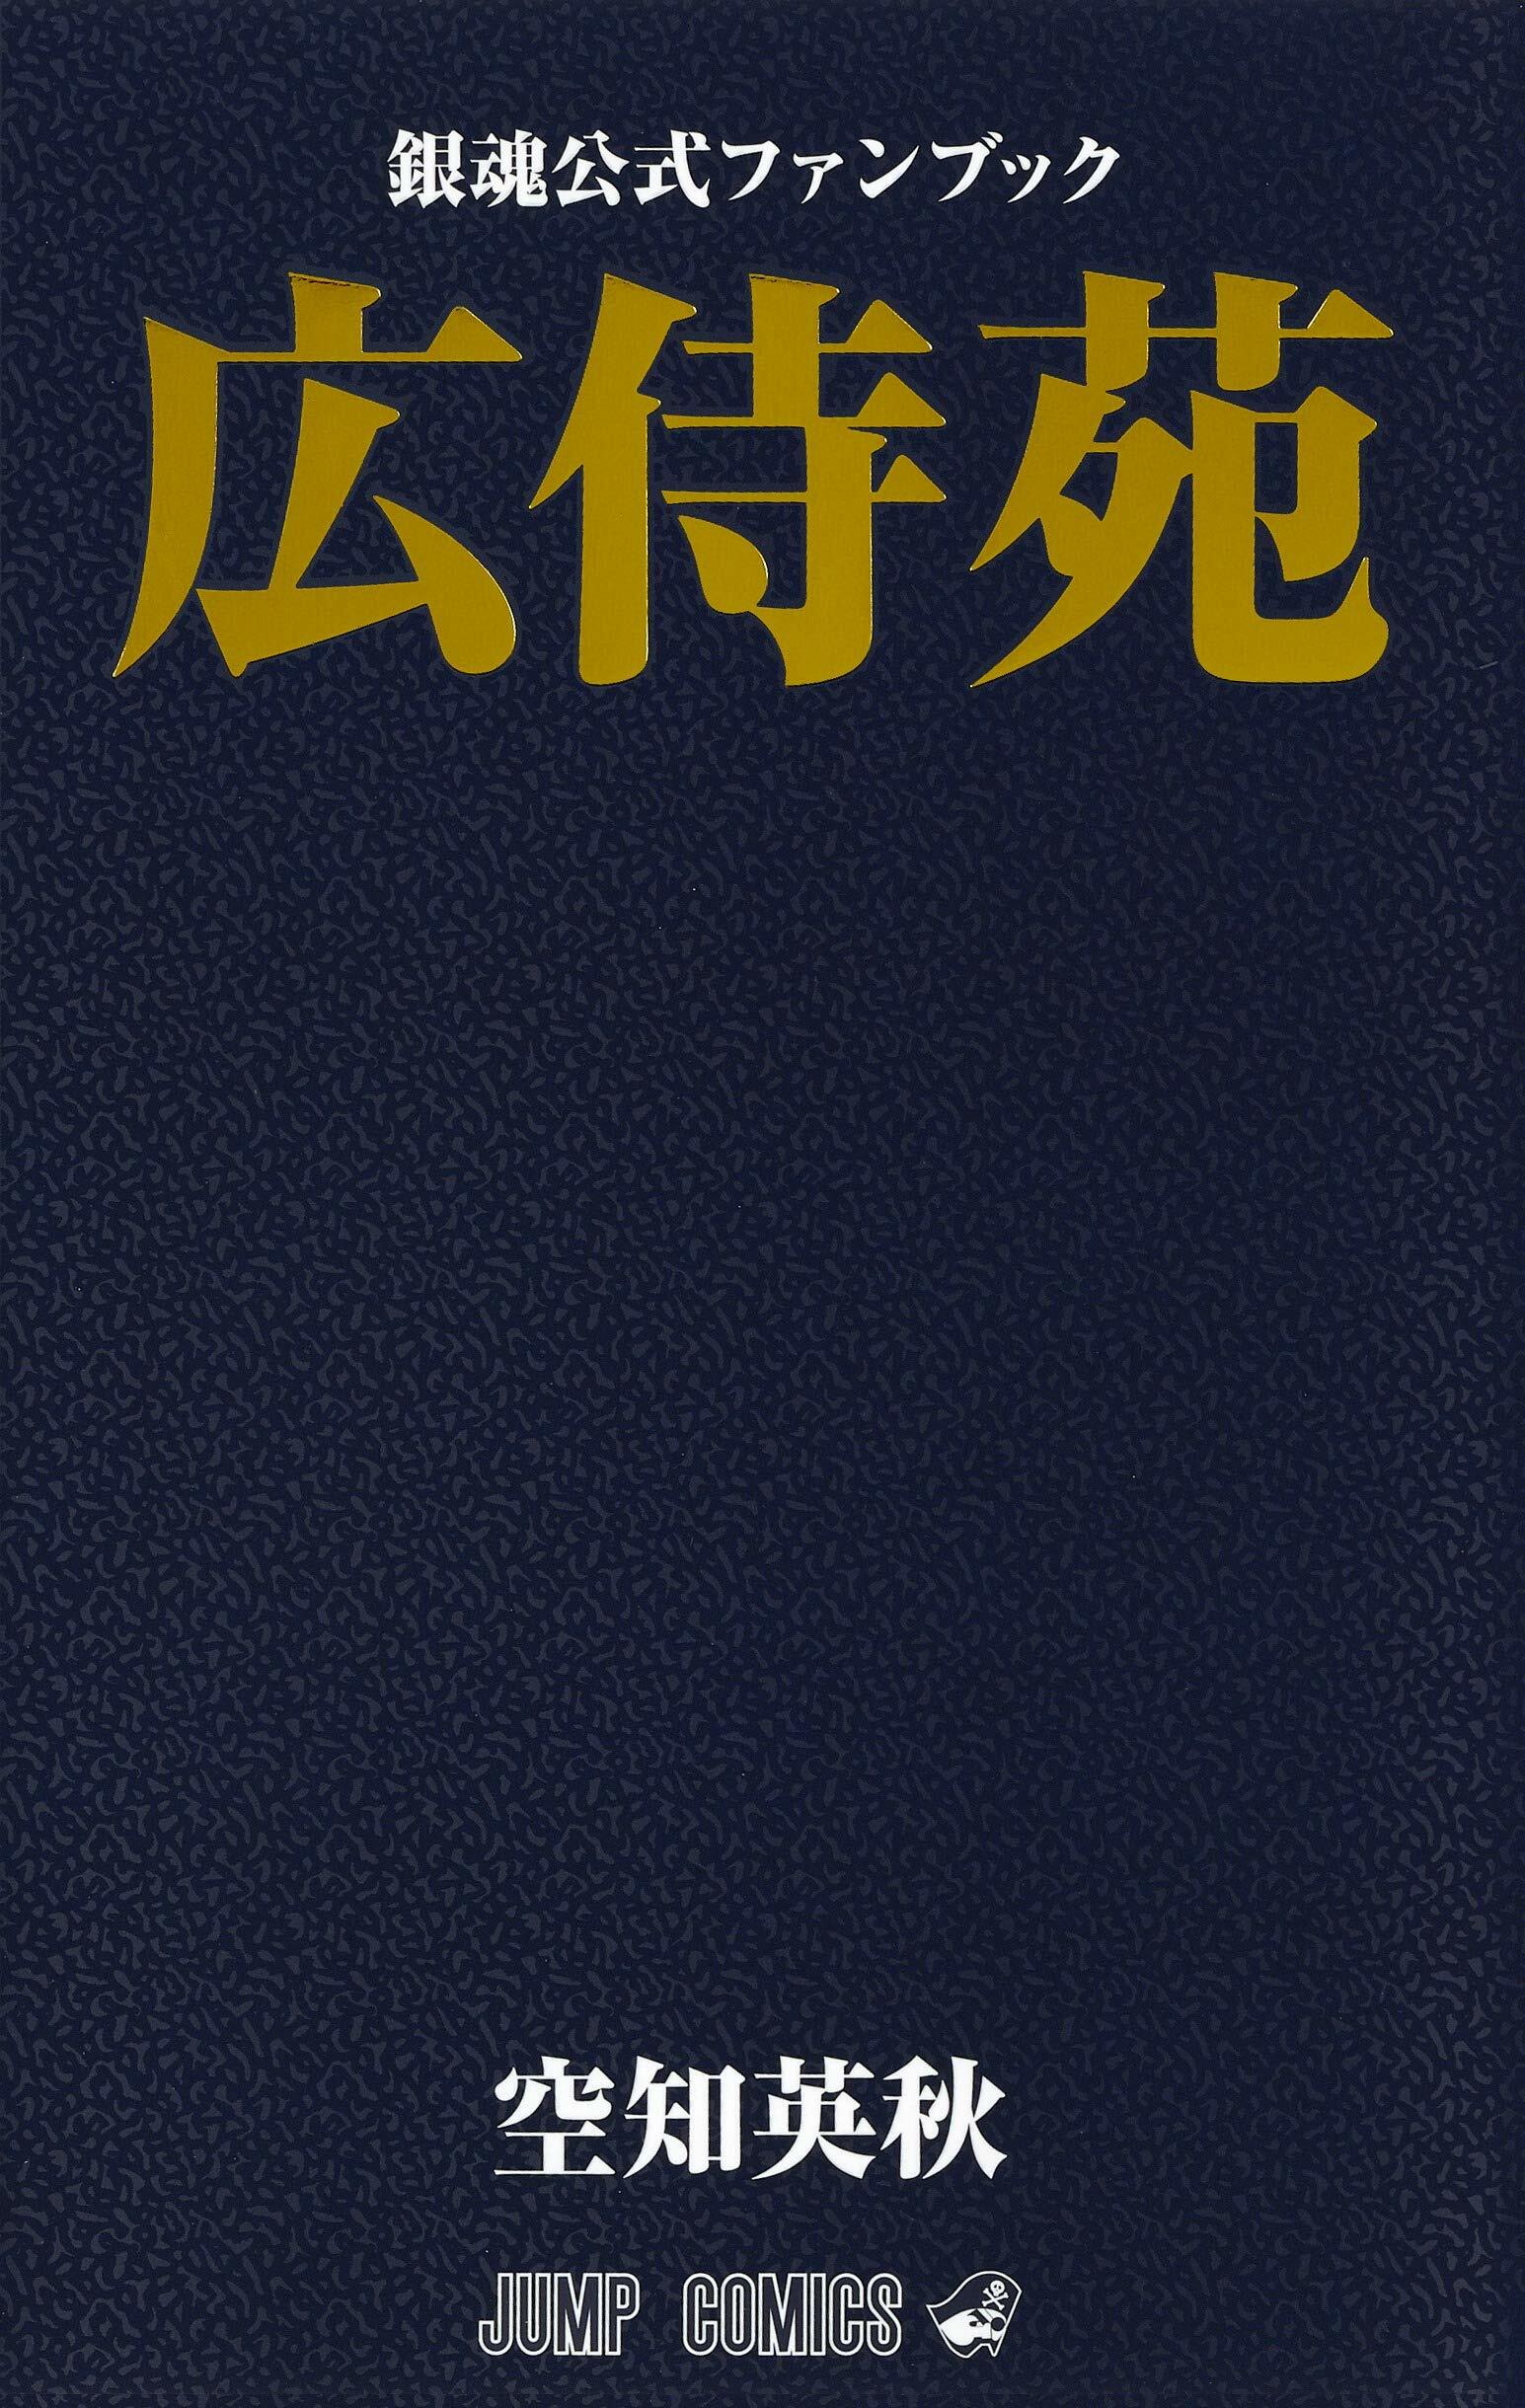 銀魂公式ファンブック「廣侍苑」 (ジャンプコミックス)